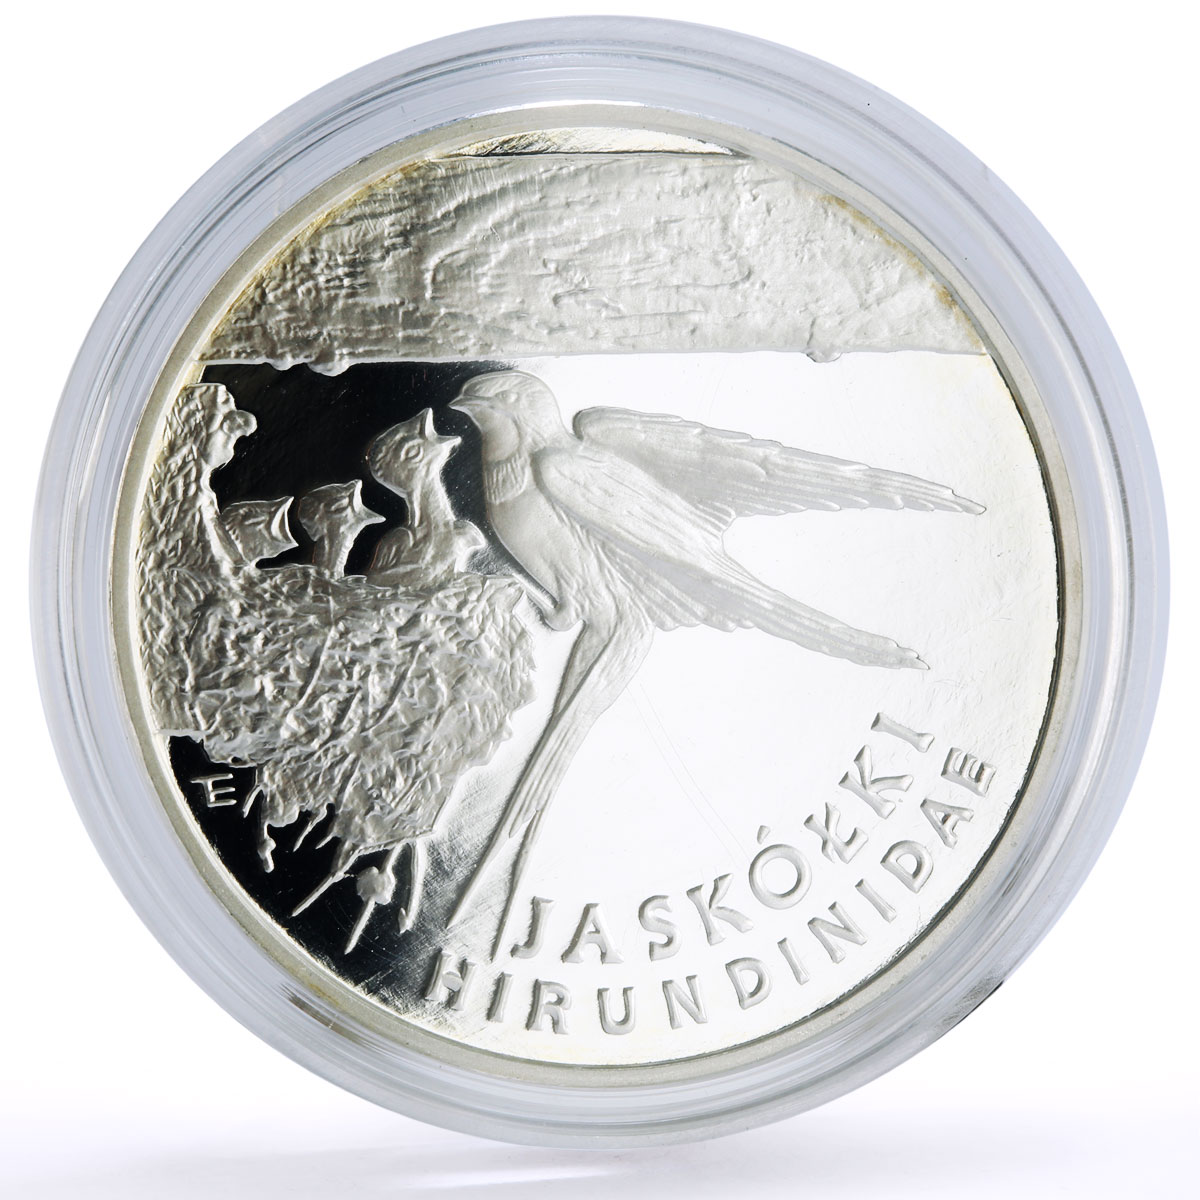 Poland 300000 zlotych Conservatio Barn Swallow Bird Fauna proof silver coin 1993